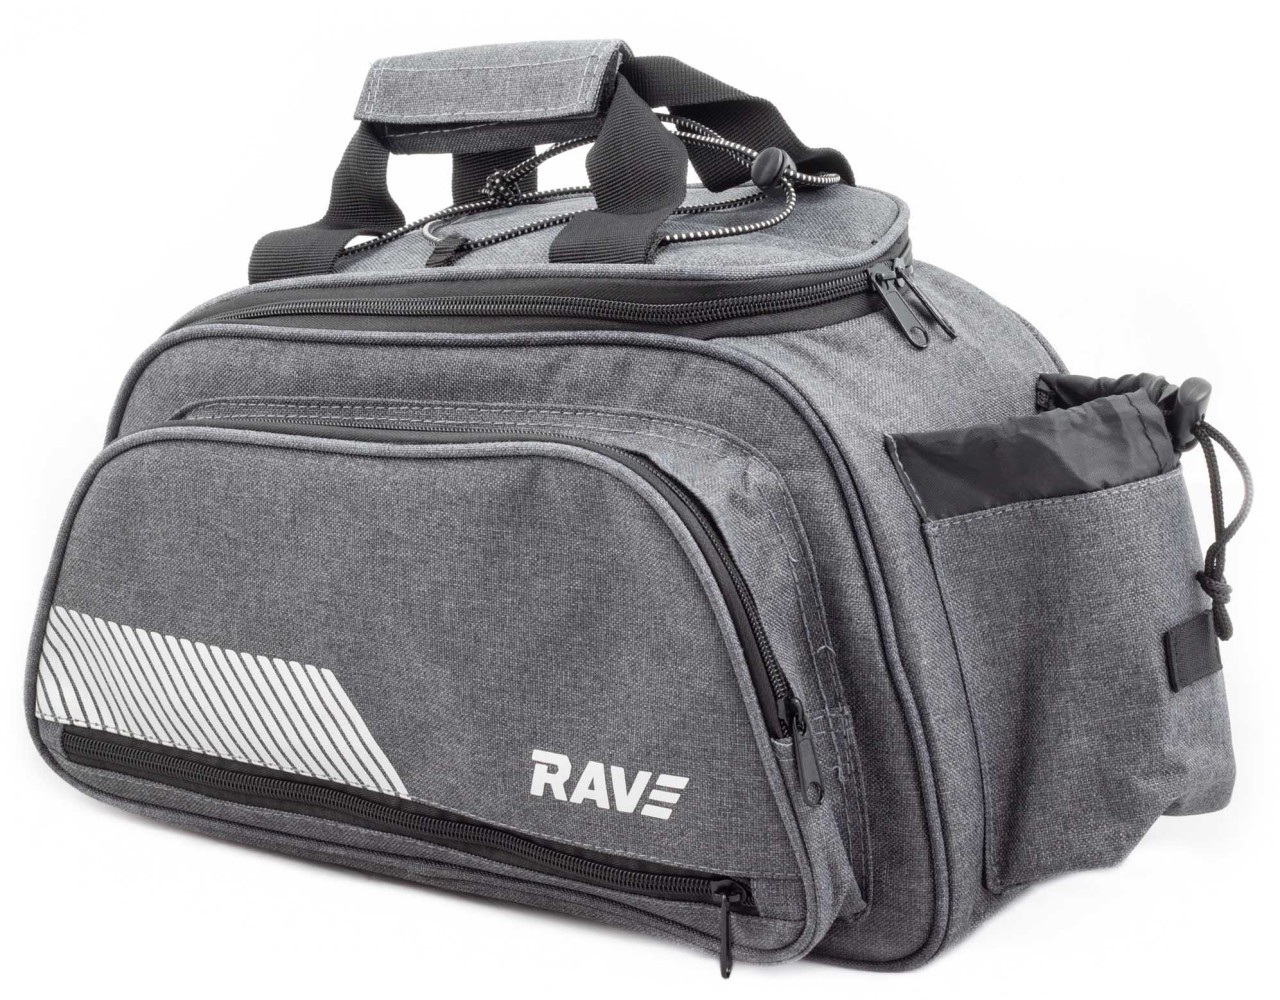 RAVE Carrier bag - cooler bag approx. 5 liters